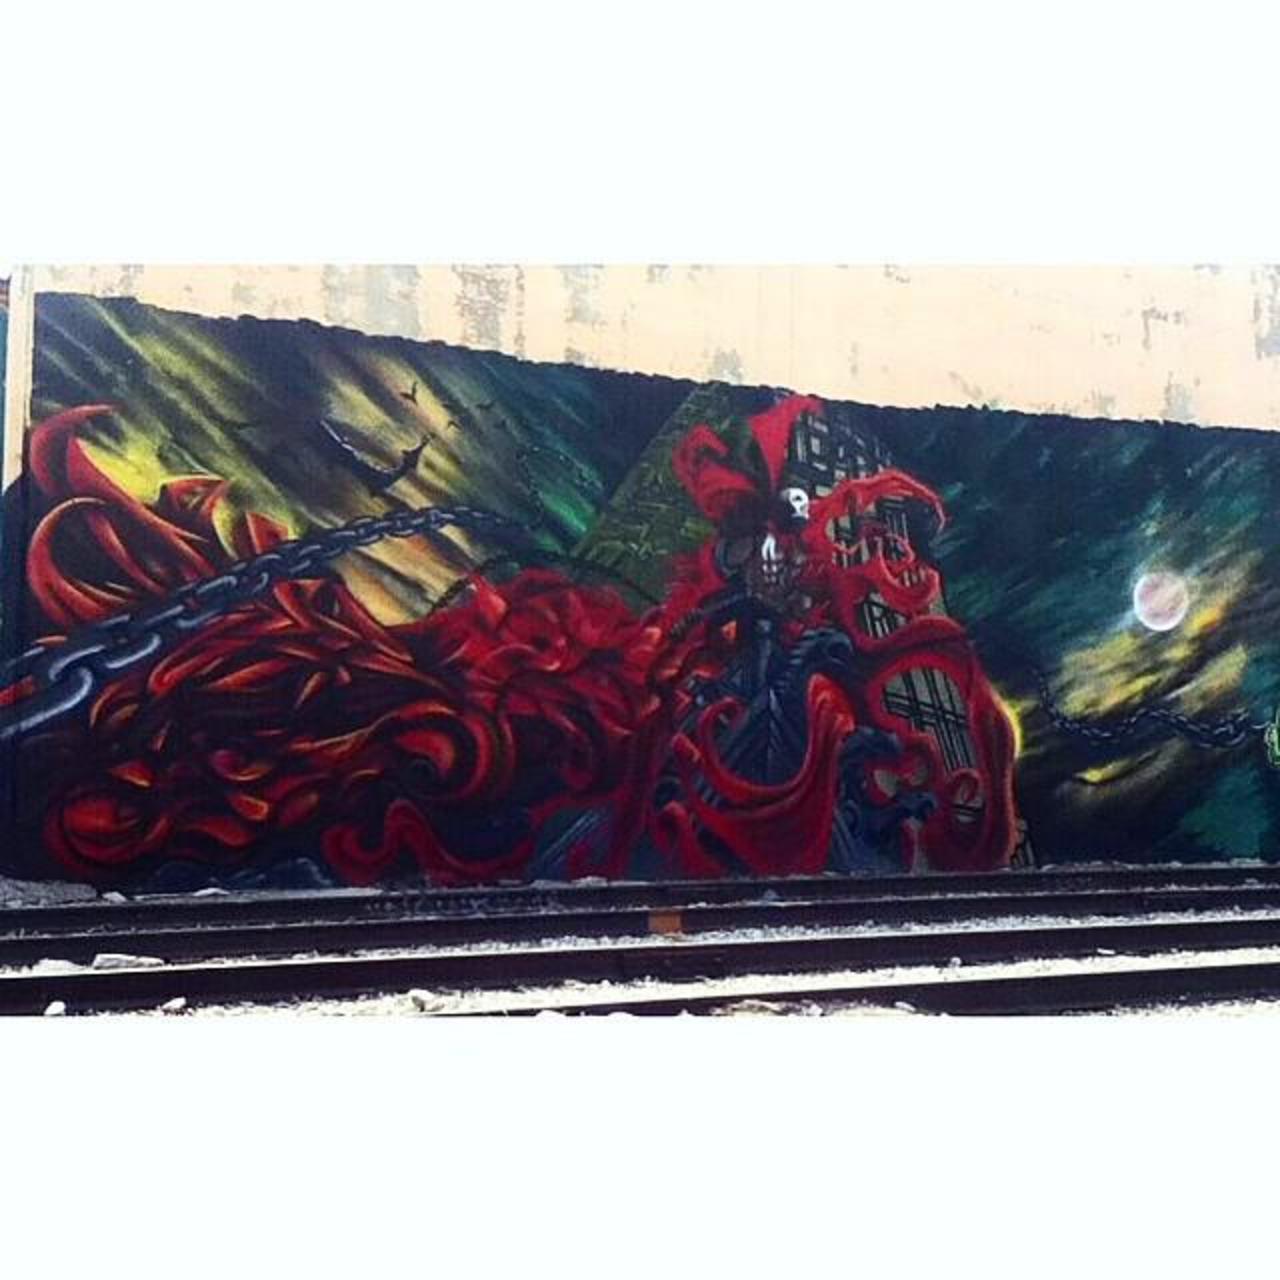 Fbf #mural #graffitiwall #graffitistreetart #graffiti #urbanstreetart #arteurbano #streetart #publicart #lastreetar… http://t.co/K1SbTr59SL